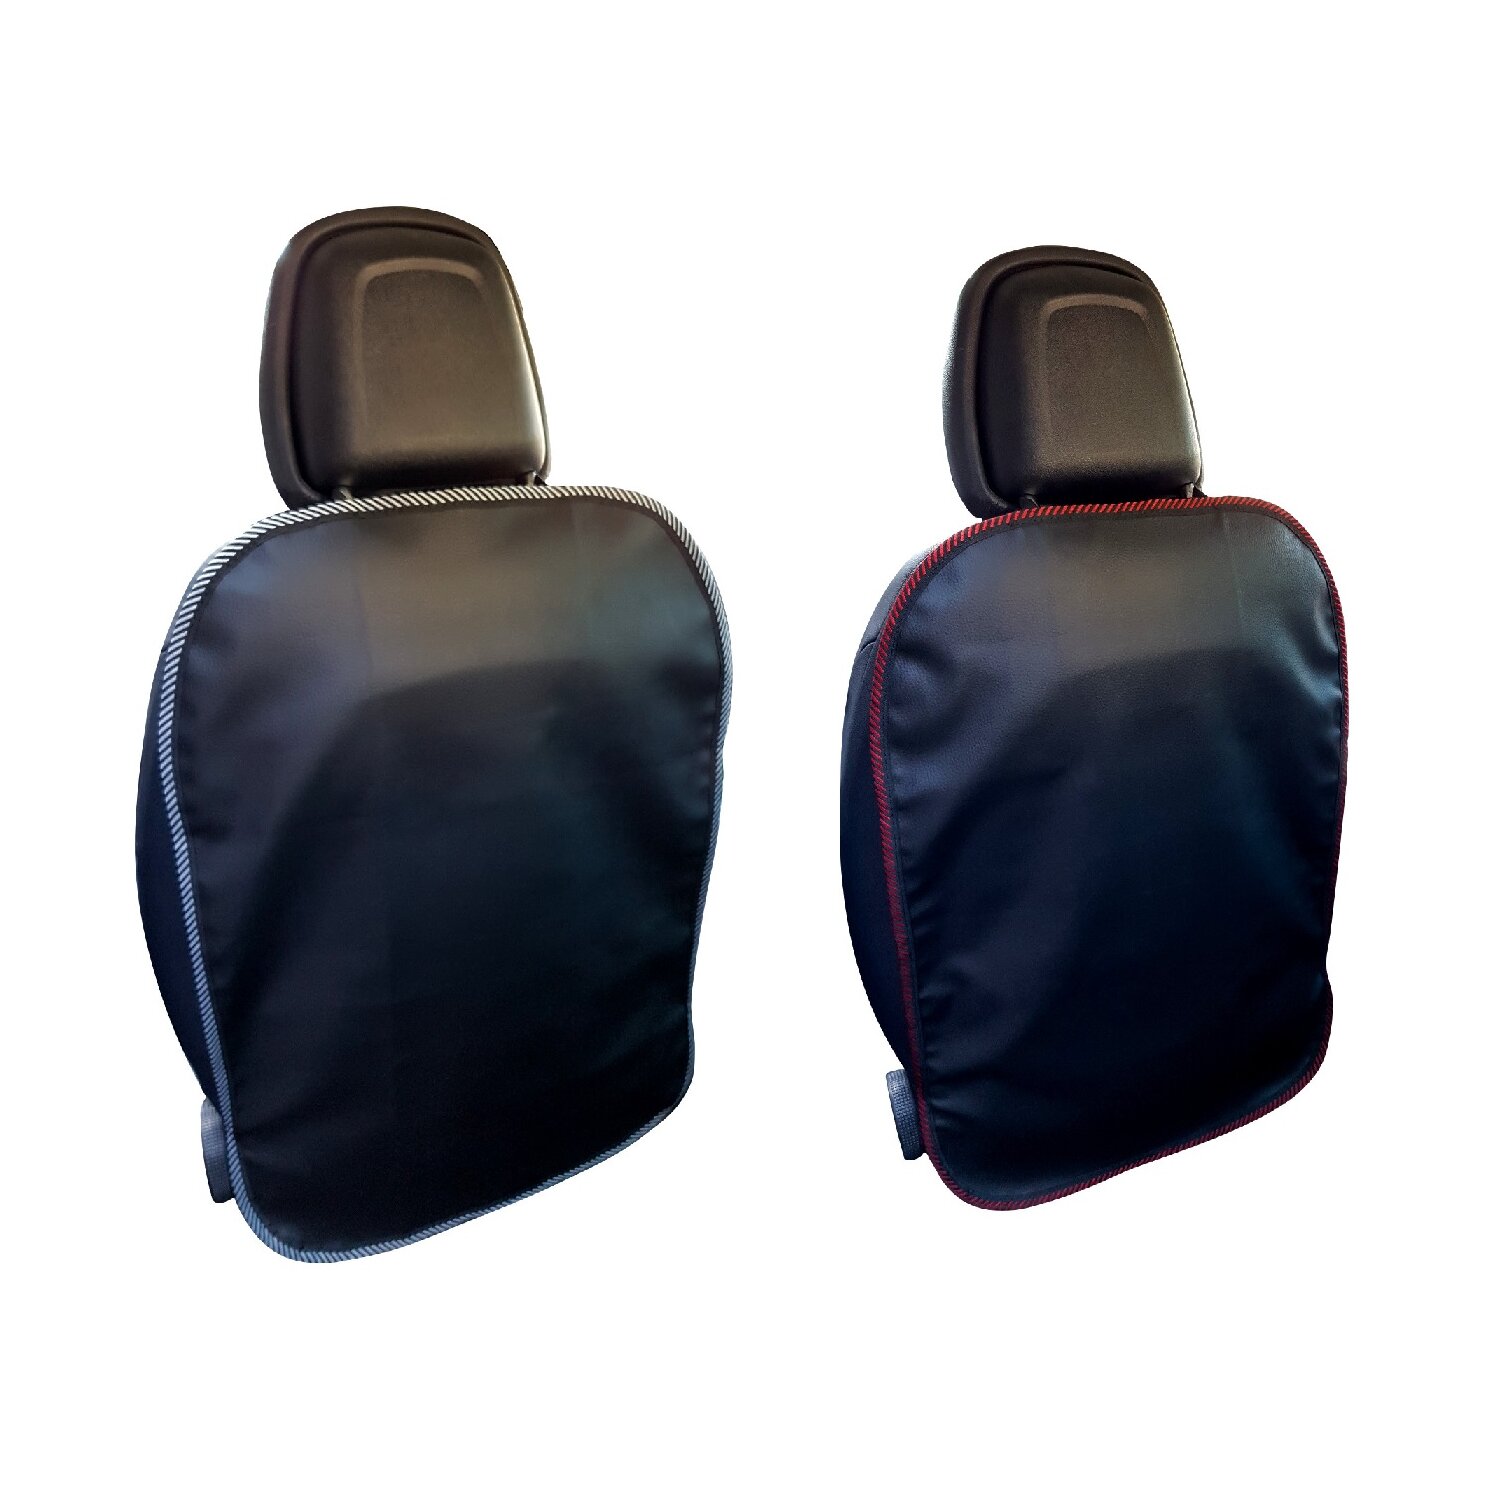 Sarsumir Sitzschutz Auto Rückenlehne, Multifunktionale Auto